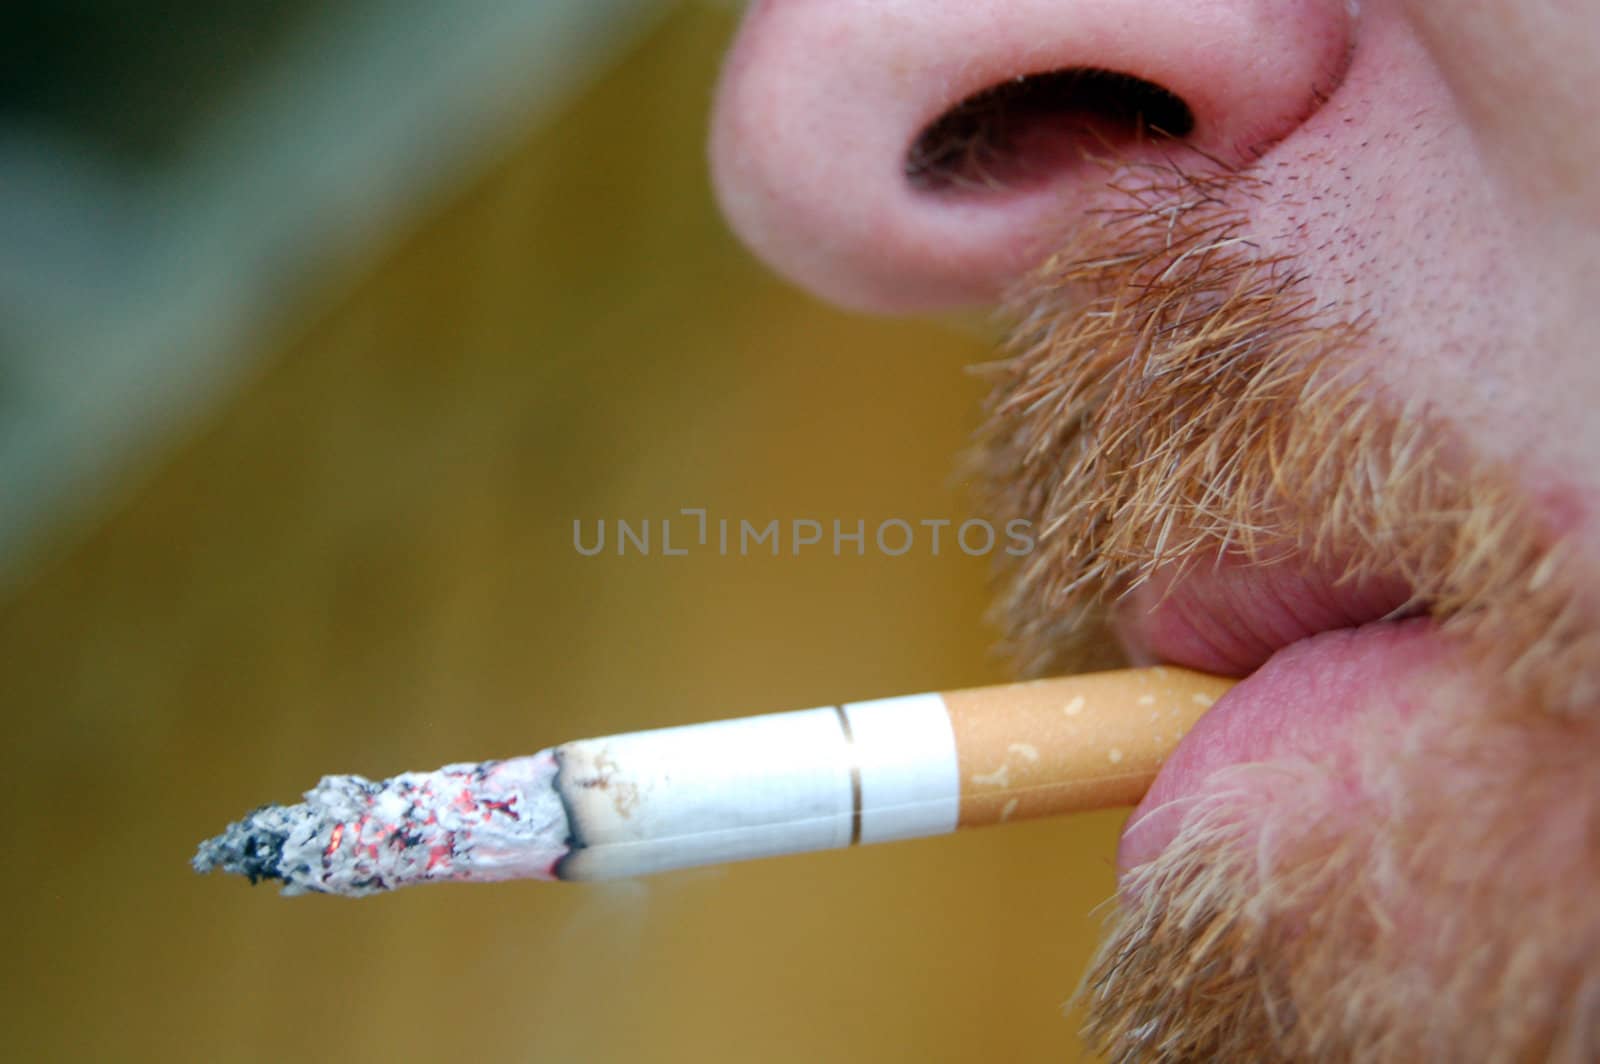 smoking a cigarette